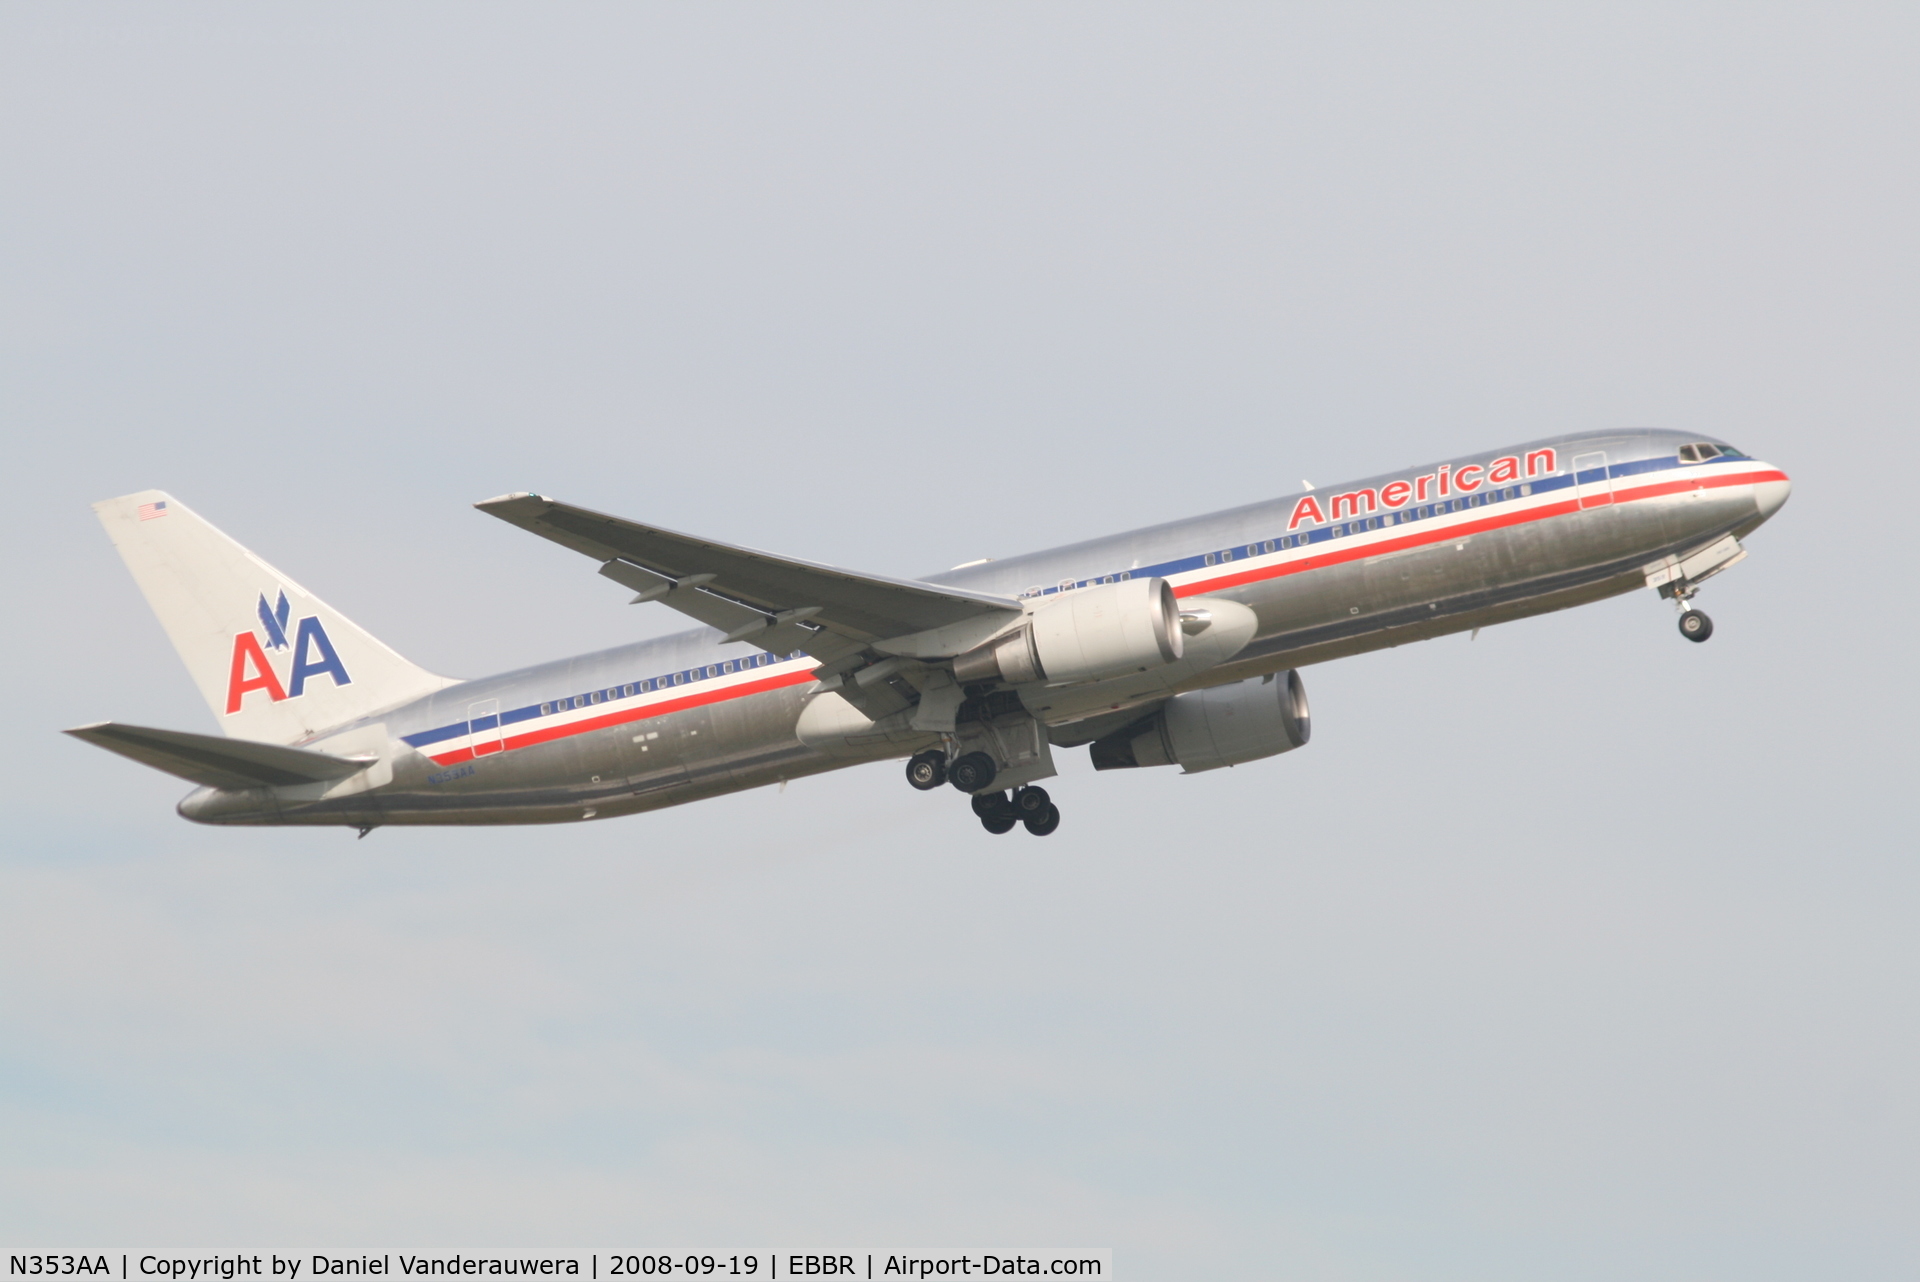 N353AA, 1988 Boeing 767-323 C/N 24034, Flight AA089 is taking off from RWY 07R